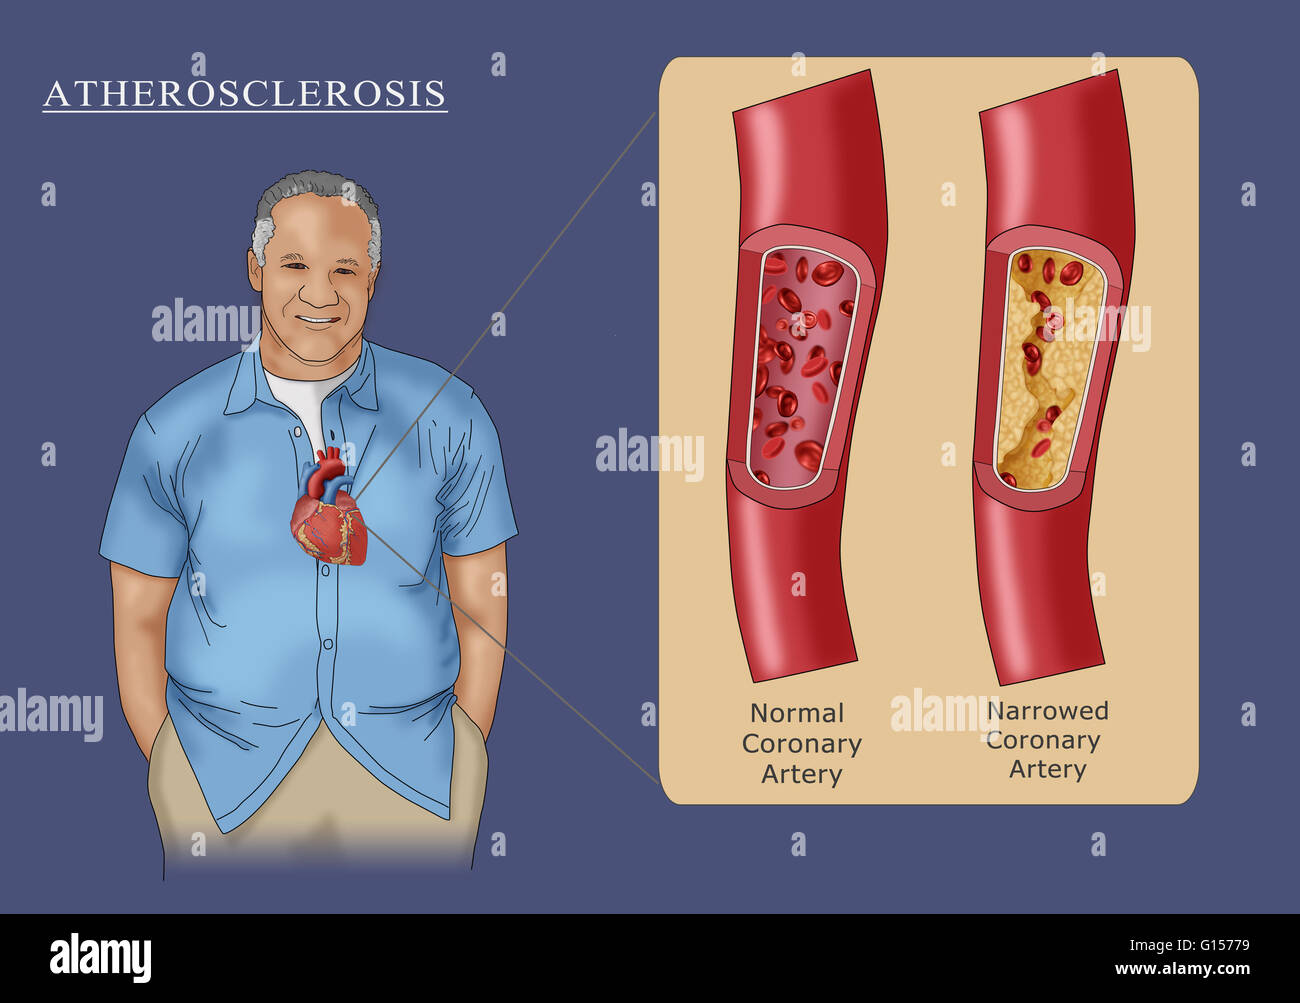 Illustrazione raffigurante un uomo con l'aterosclerosi, la limitazione del flusso di sangue attraverso l'arteria a causa di ostruzione della placca (riquadro destro). Per il confronto di una arteria normale è anche mostrato nel riquadro (sinistra). Foto Stock